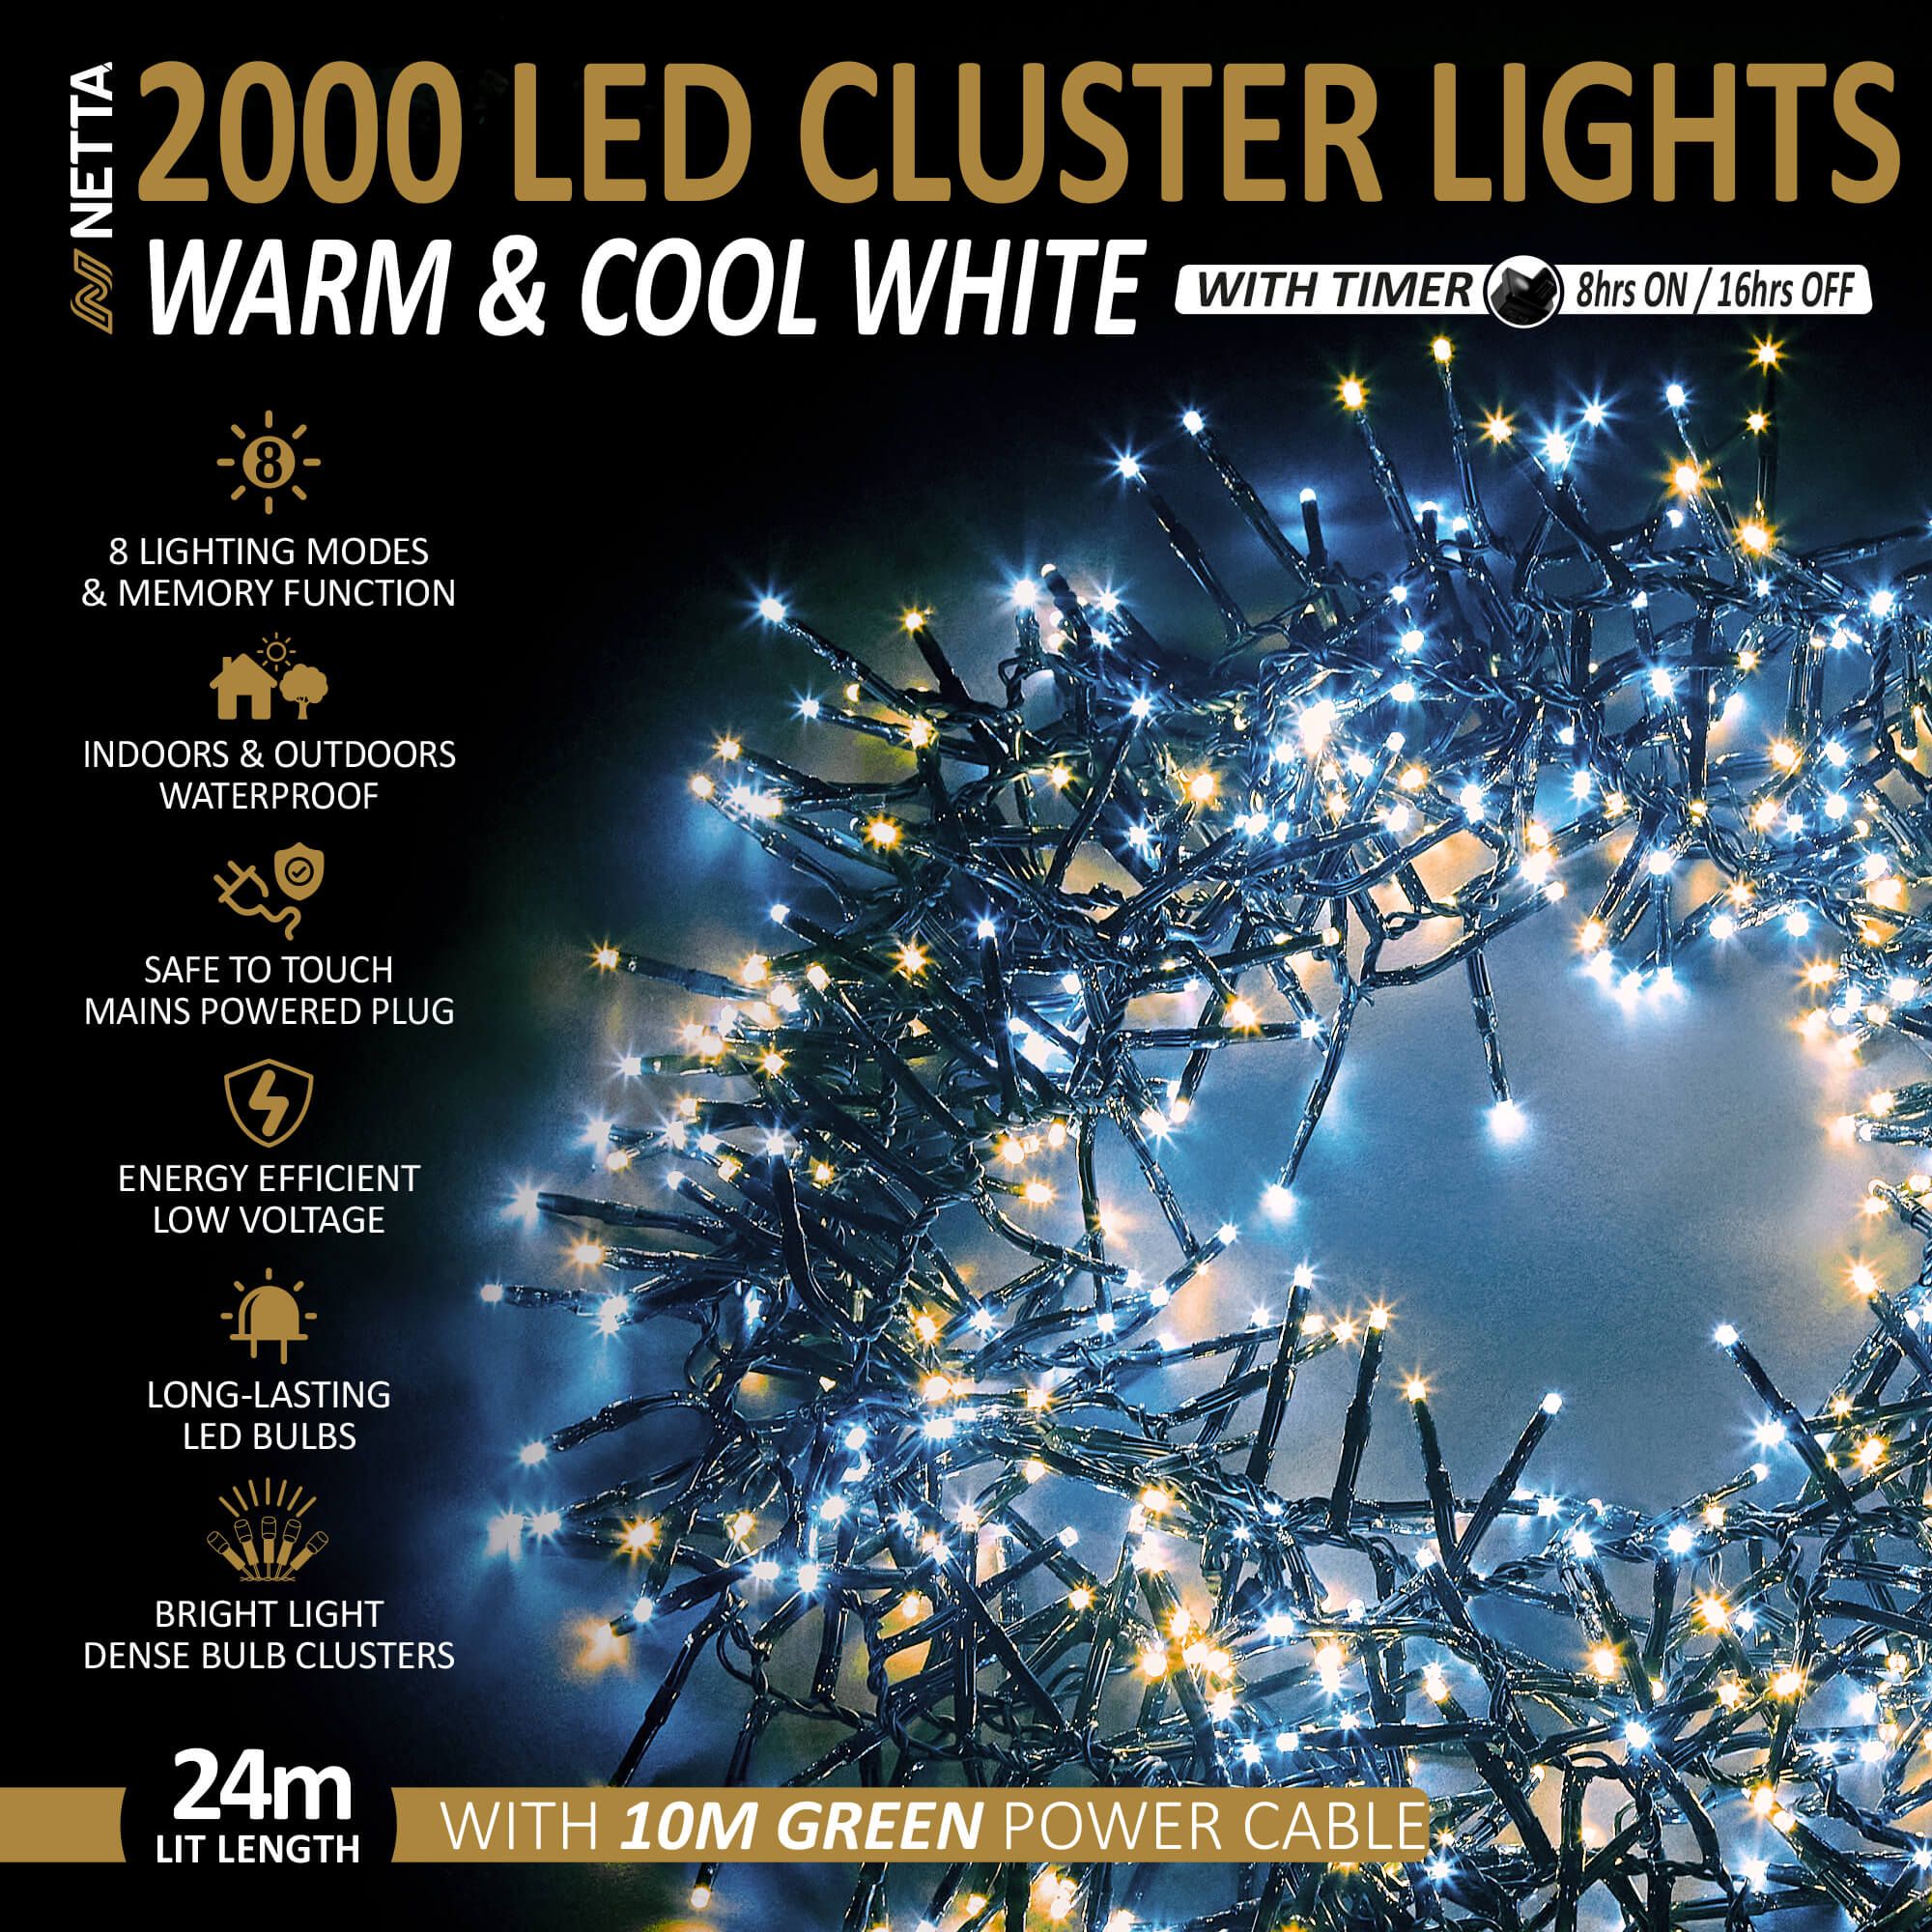 NETTA 2000LED Cluster String Lights - Warm & Cool White